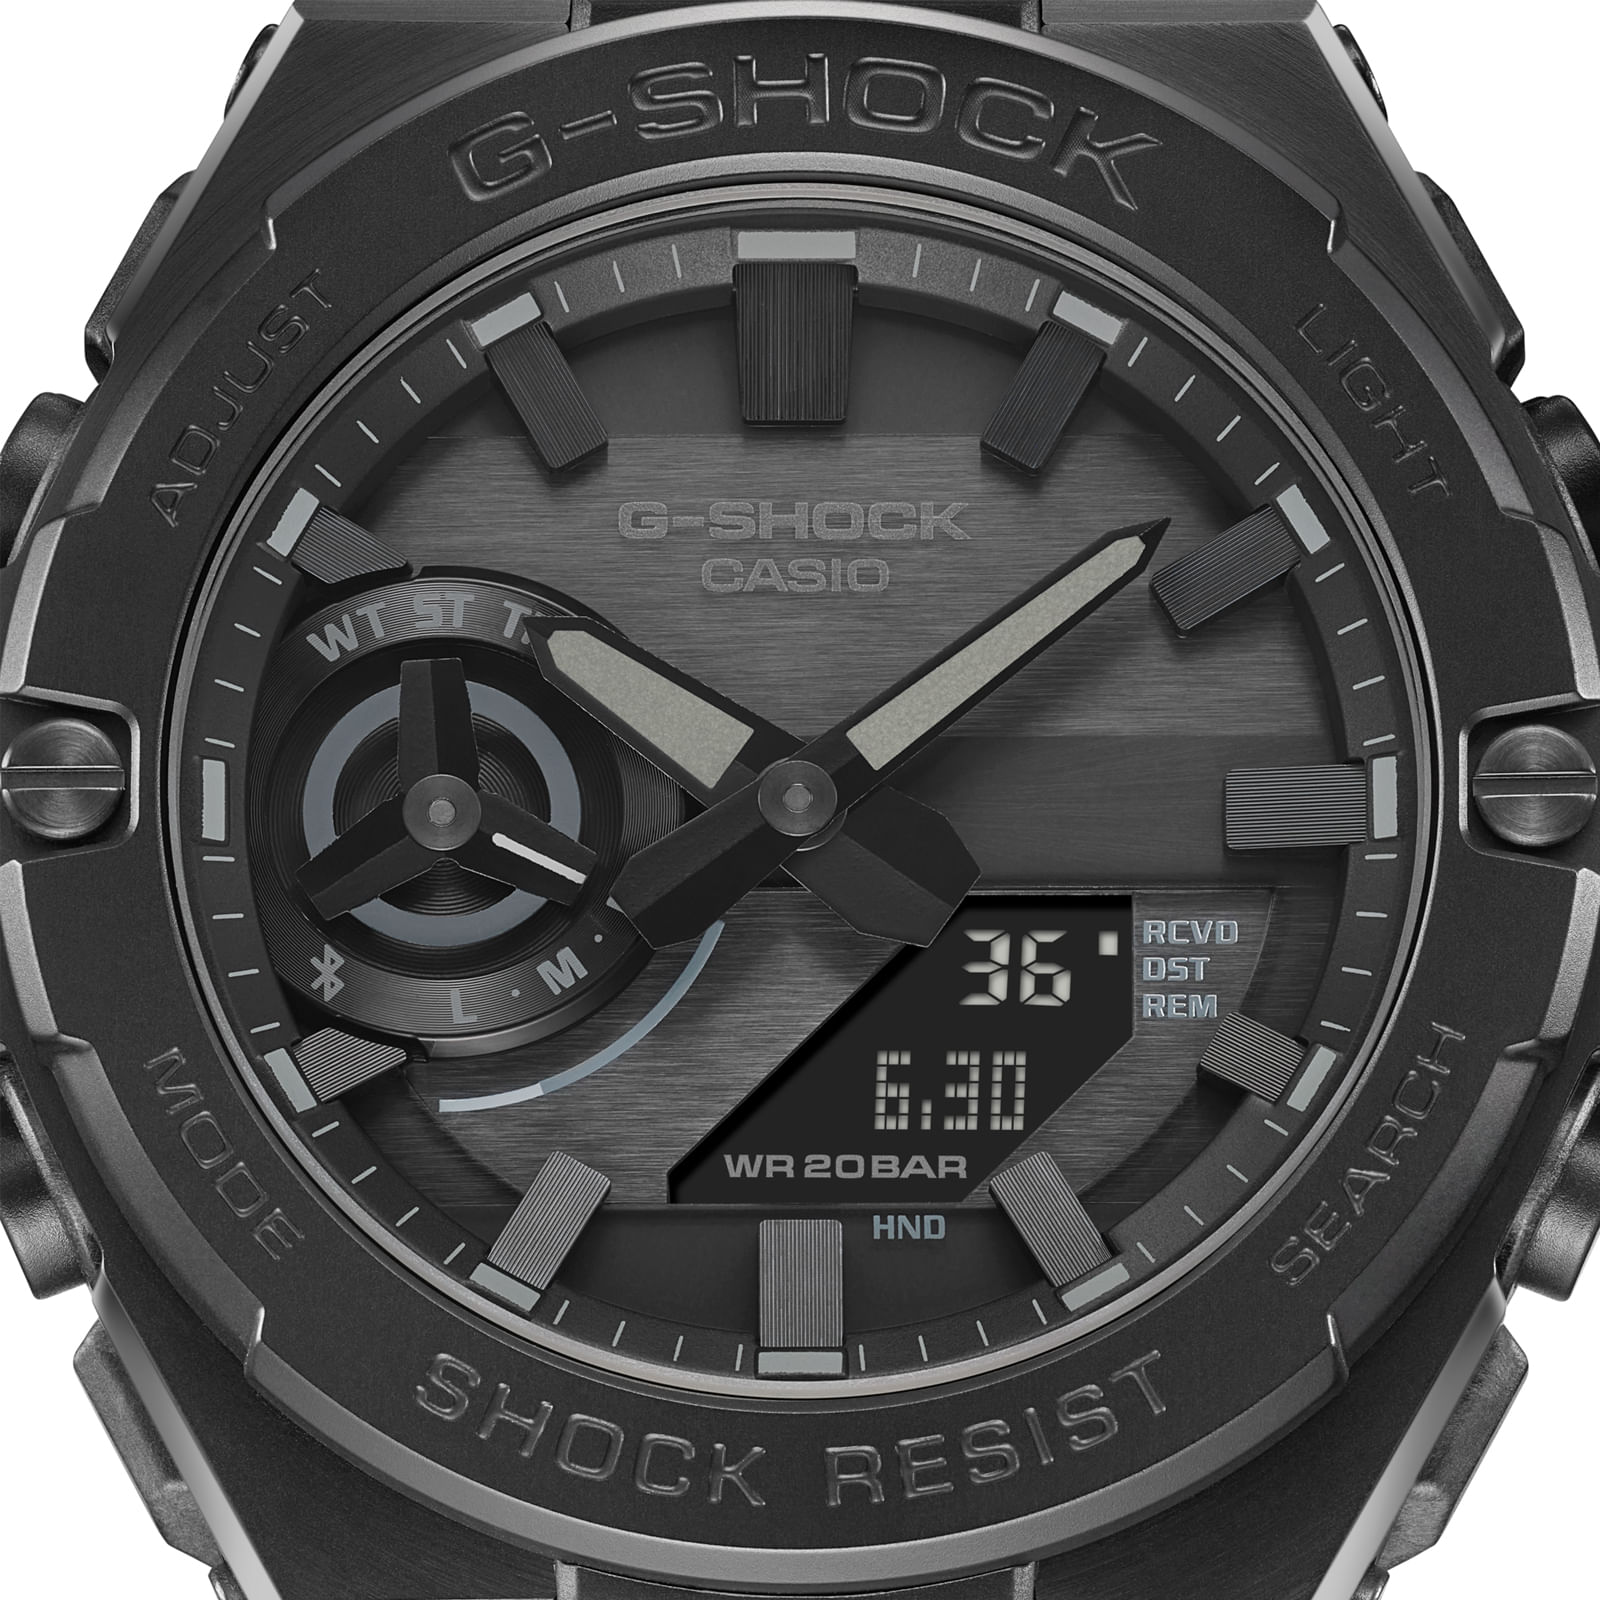 Reloj G-SHOCK GST-B500BD-1A Resina/Acero Hombre Negro